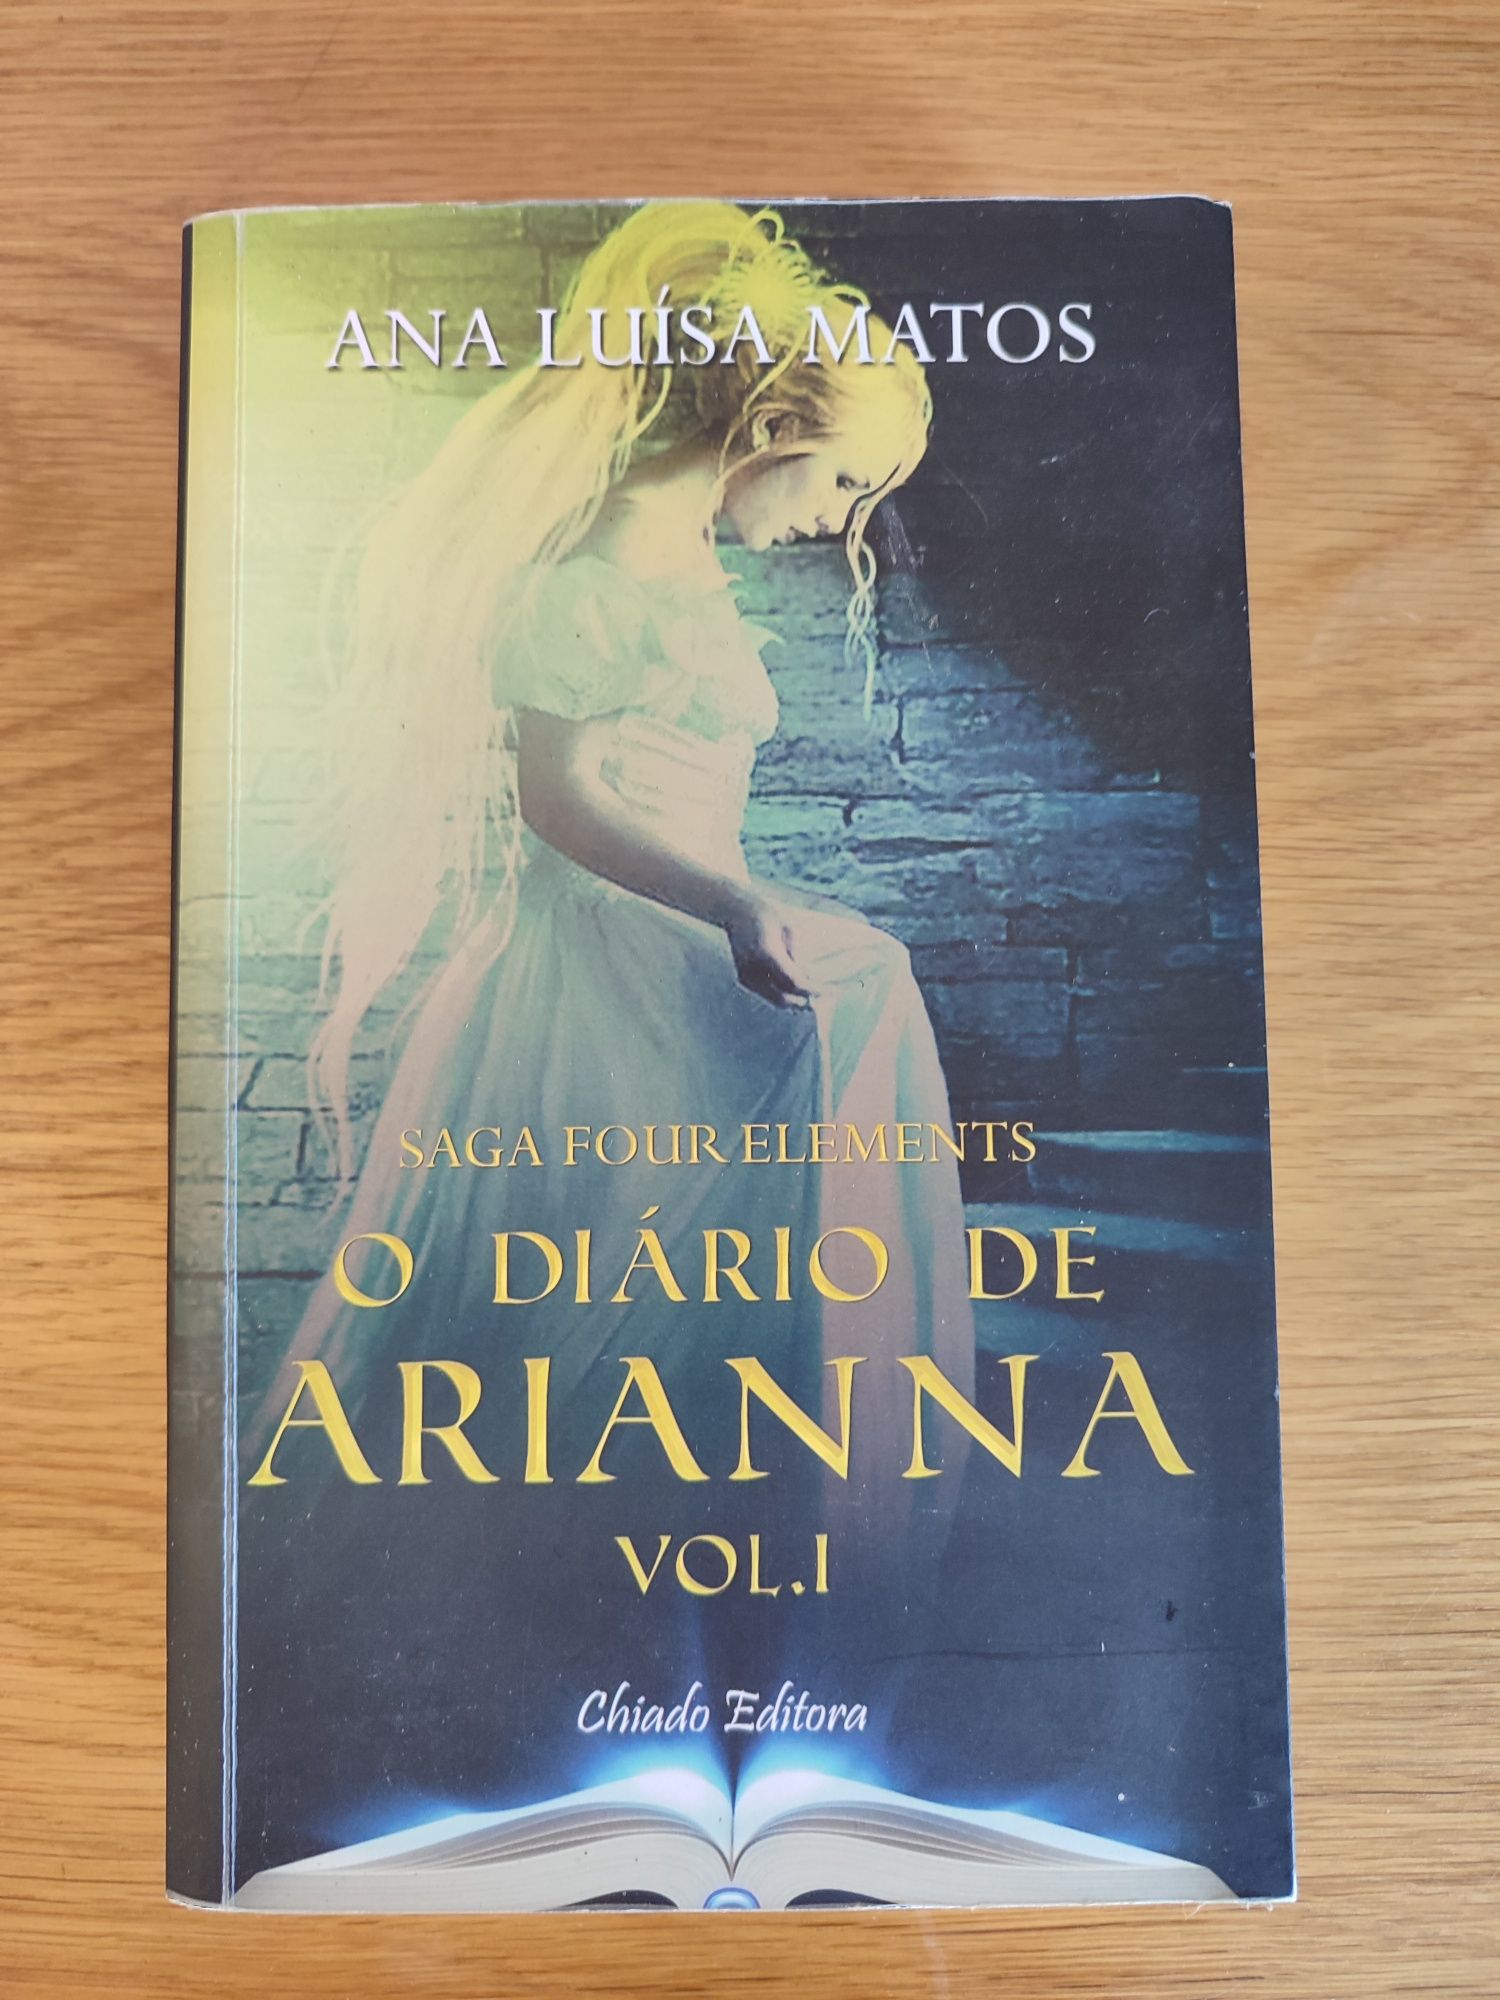 Saga Four Elements vol.1 O Diário de Ariana de Ana Luísa Matos